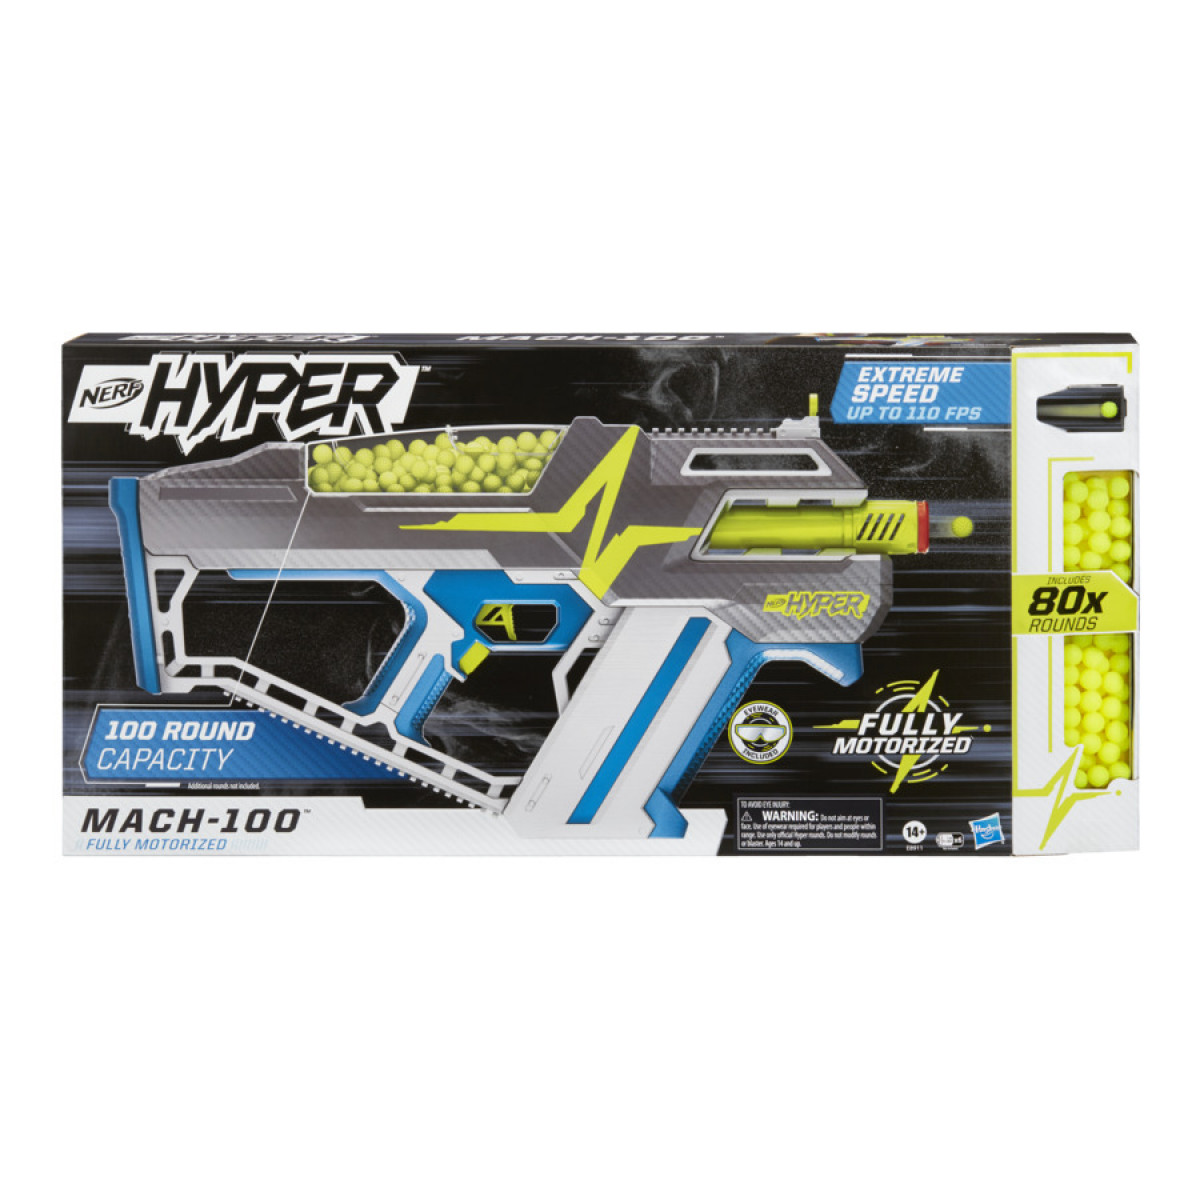 Nerf Hyper Evolve 100 Blaster